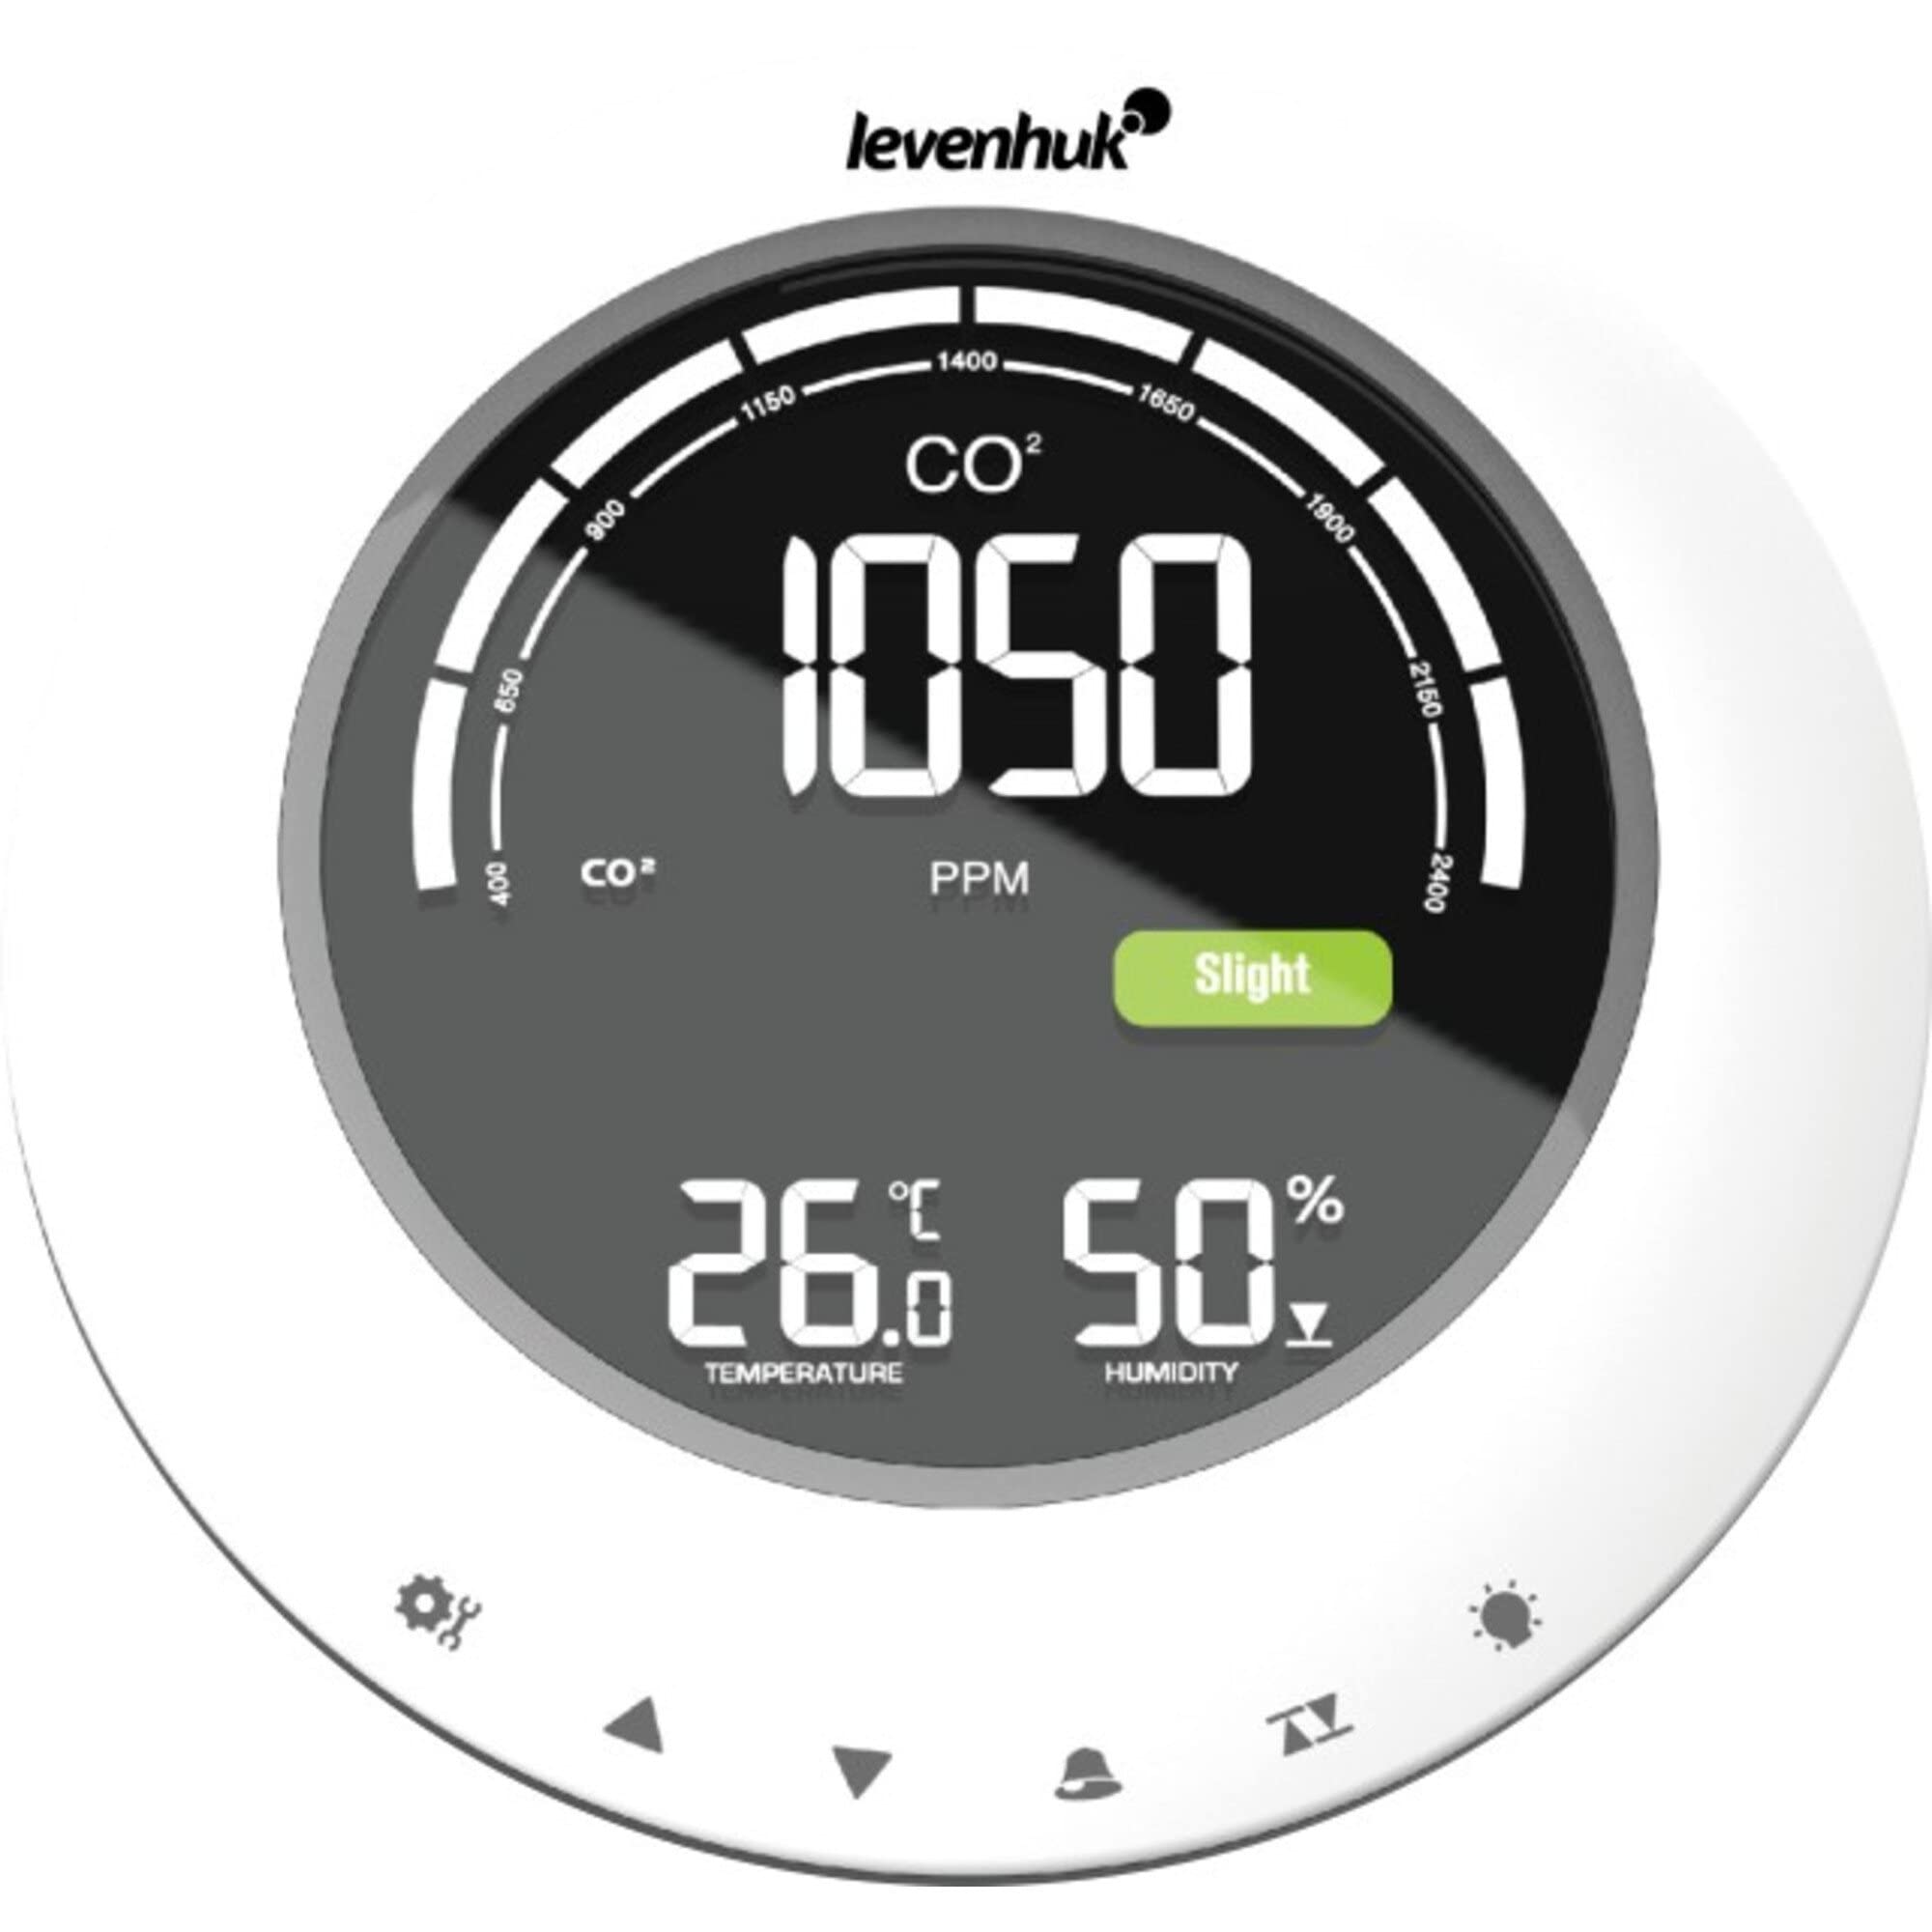 Levenhuk Wezzer PLUS LP90 CO2-Monitor – Ermittelt die Temperatur, Luftfeuchtigkeit und den Kohlendioxidgehalt